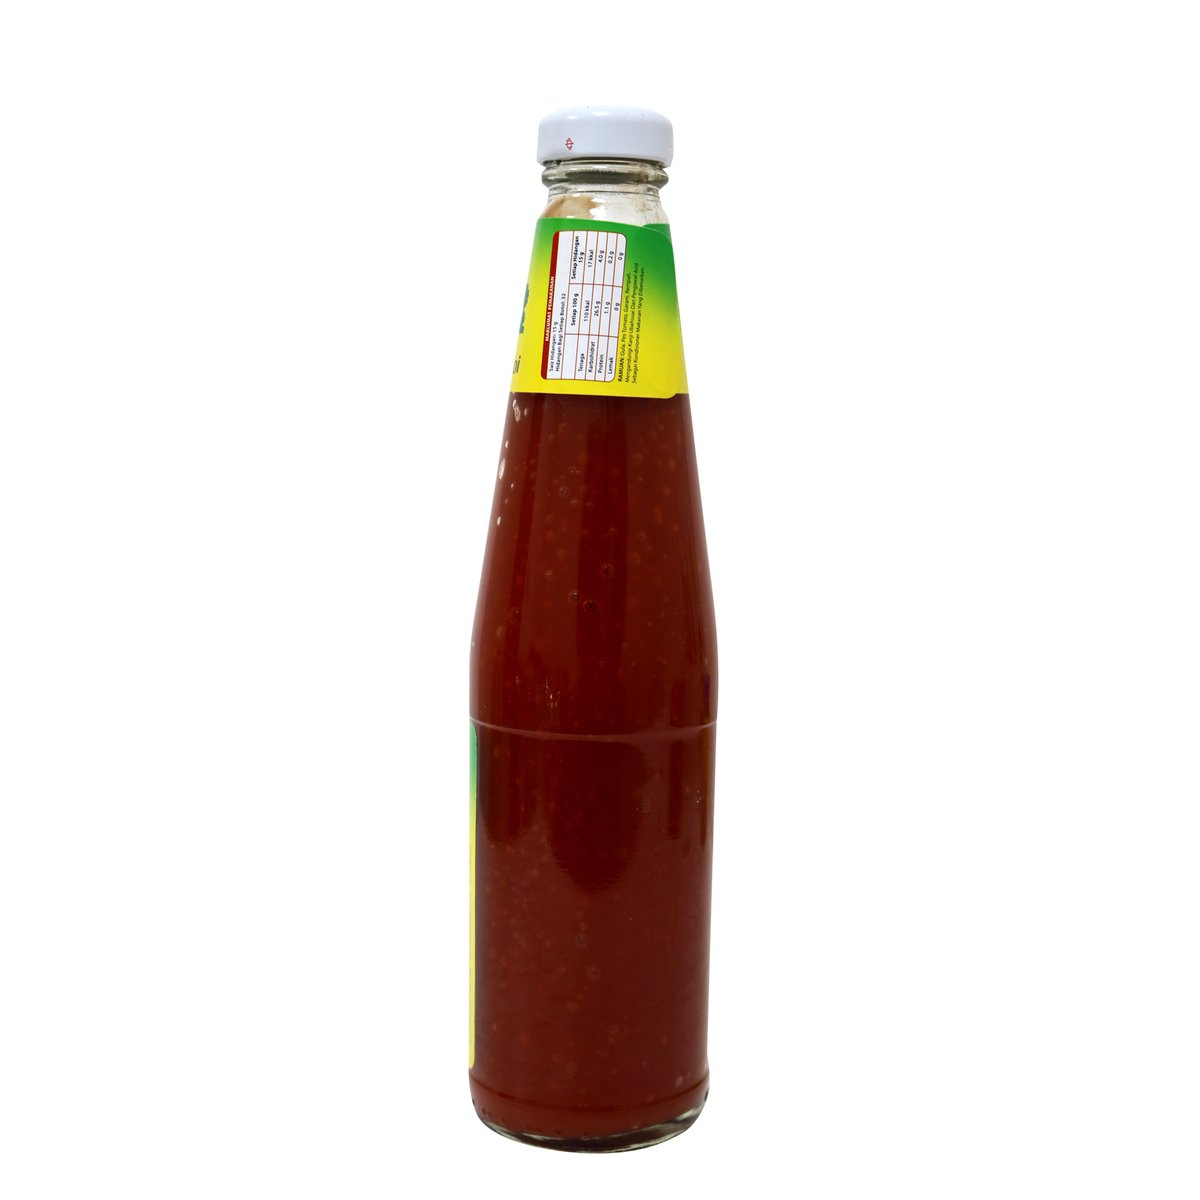 Kimball Tomato Ketchup 485g